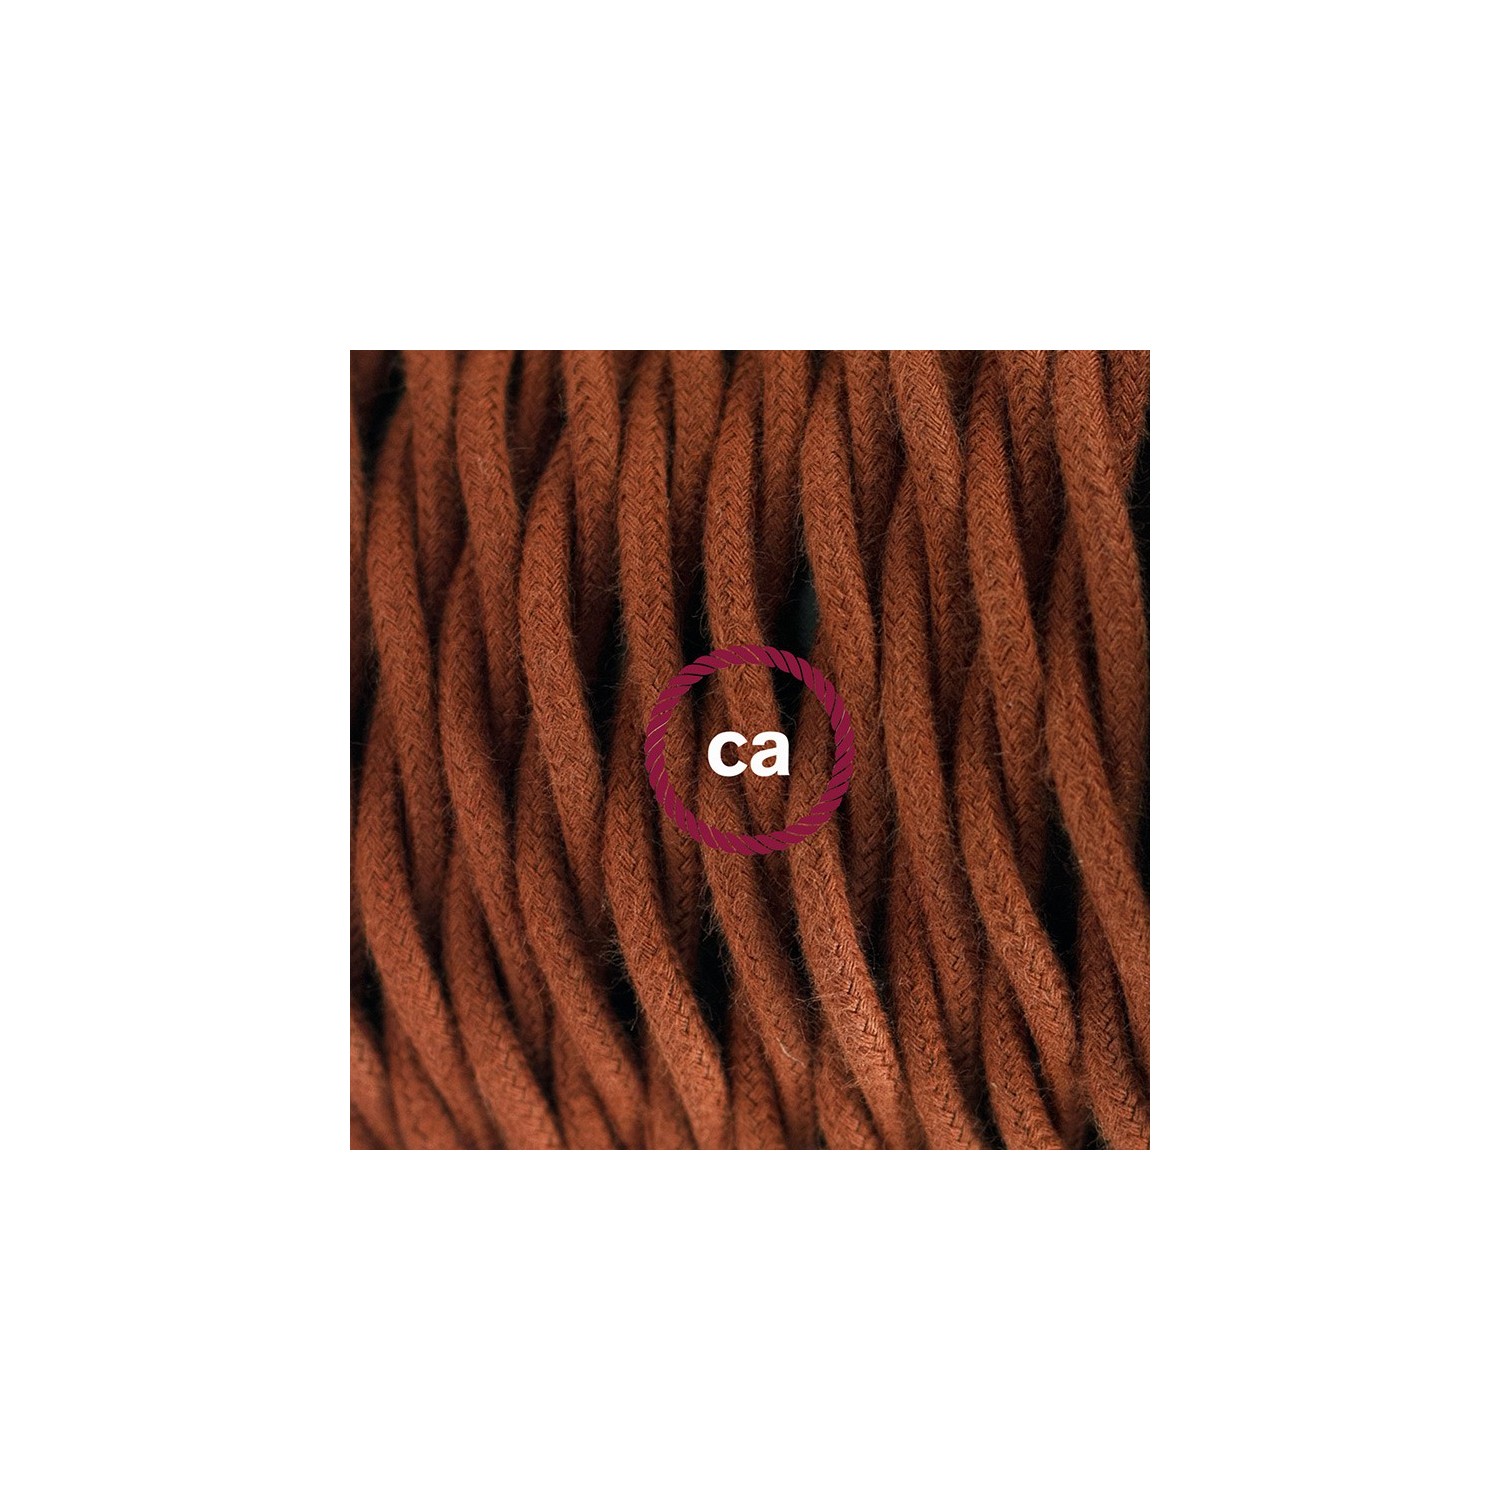 Gevlochten flexibele textielkabel van katoen met schakelaar en stekker. TC23 - hert bruin 1,80 m.